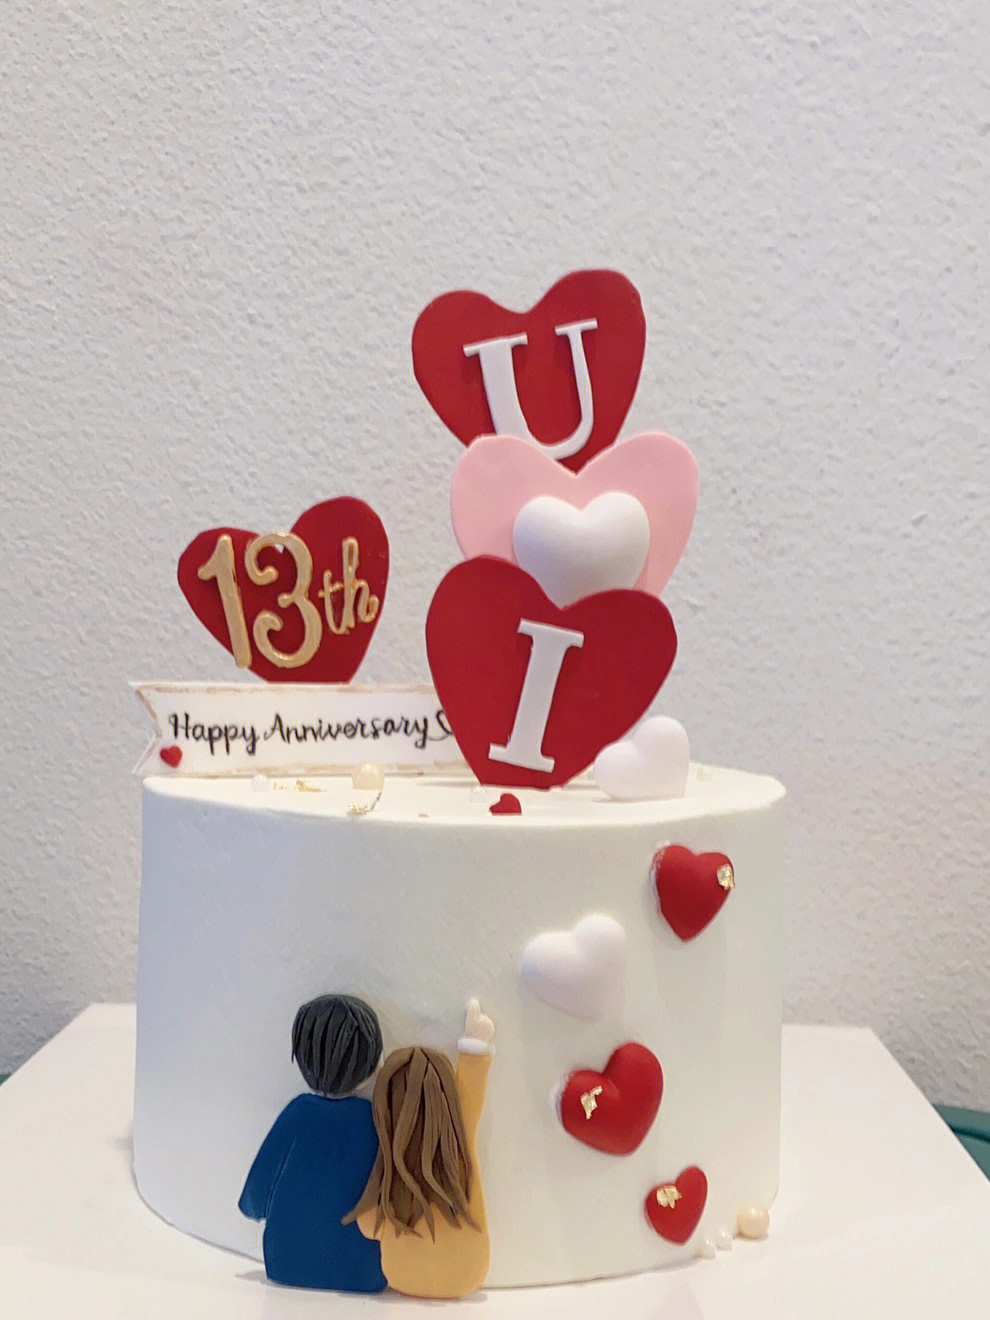 结婚40周年纪念日蛋糕图片